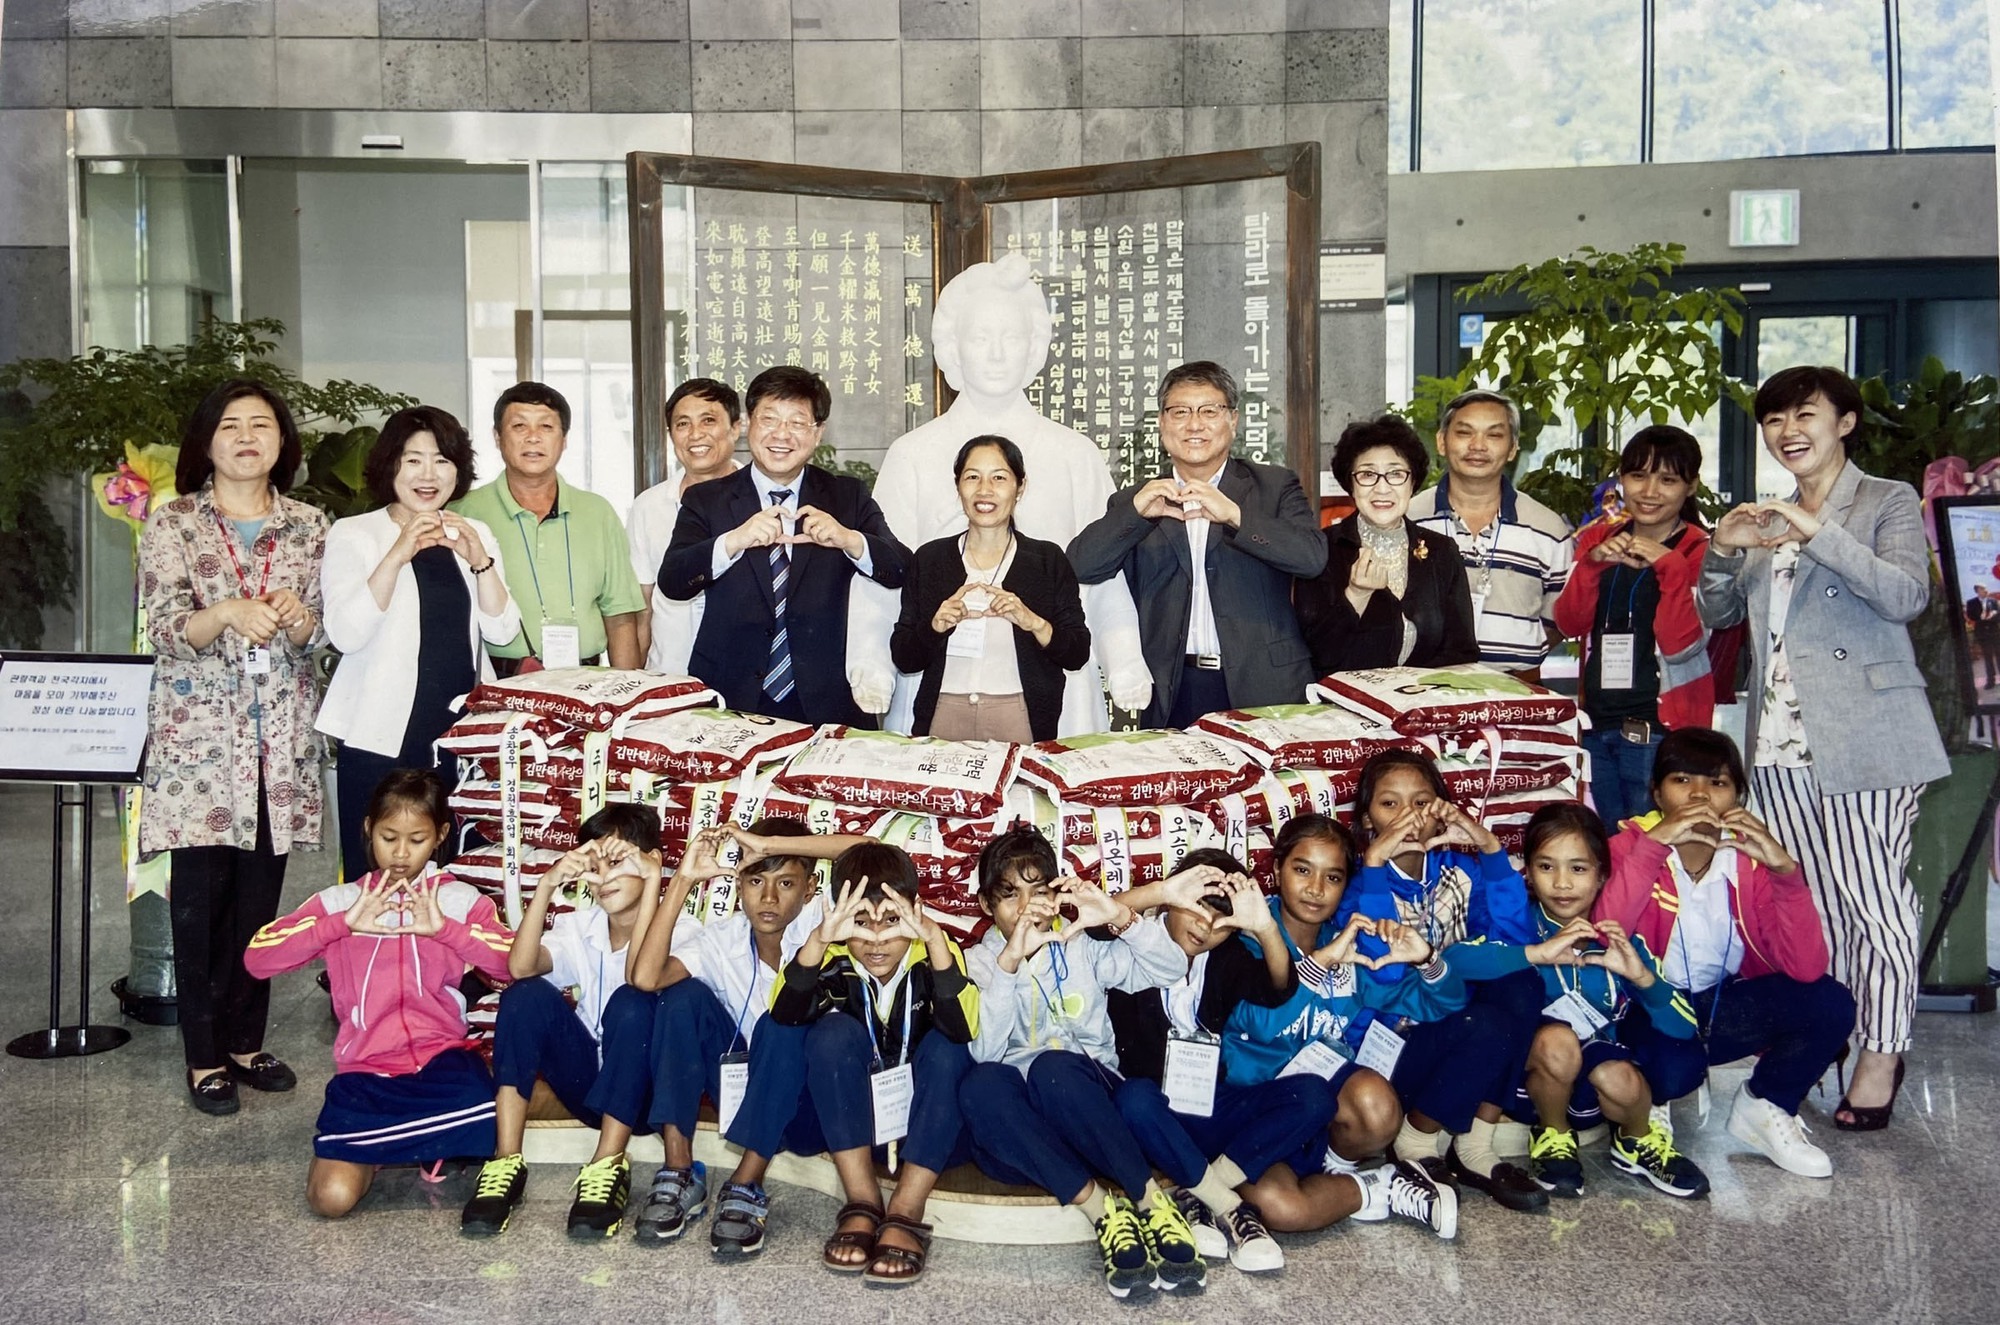 Ngôi trường tên Jeju và chuyện học sinh Raglai đi Hàn Quốc - Ảnh 1.